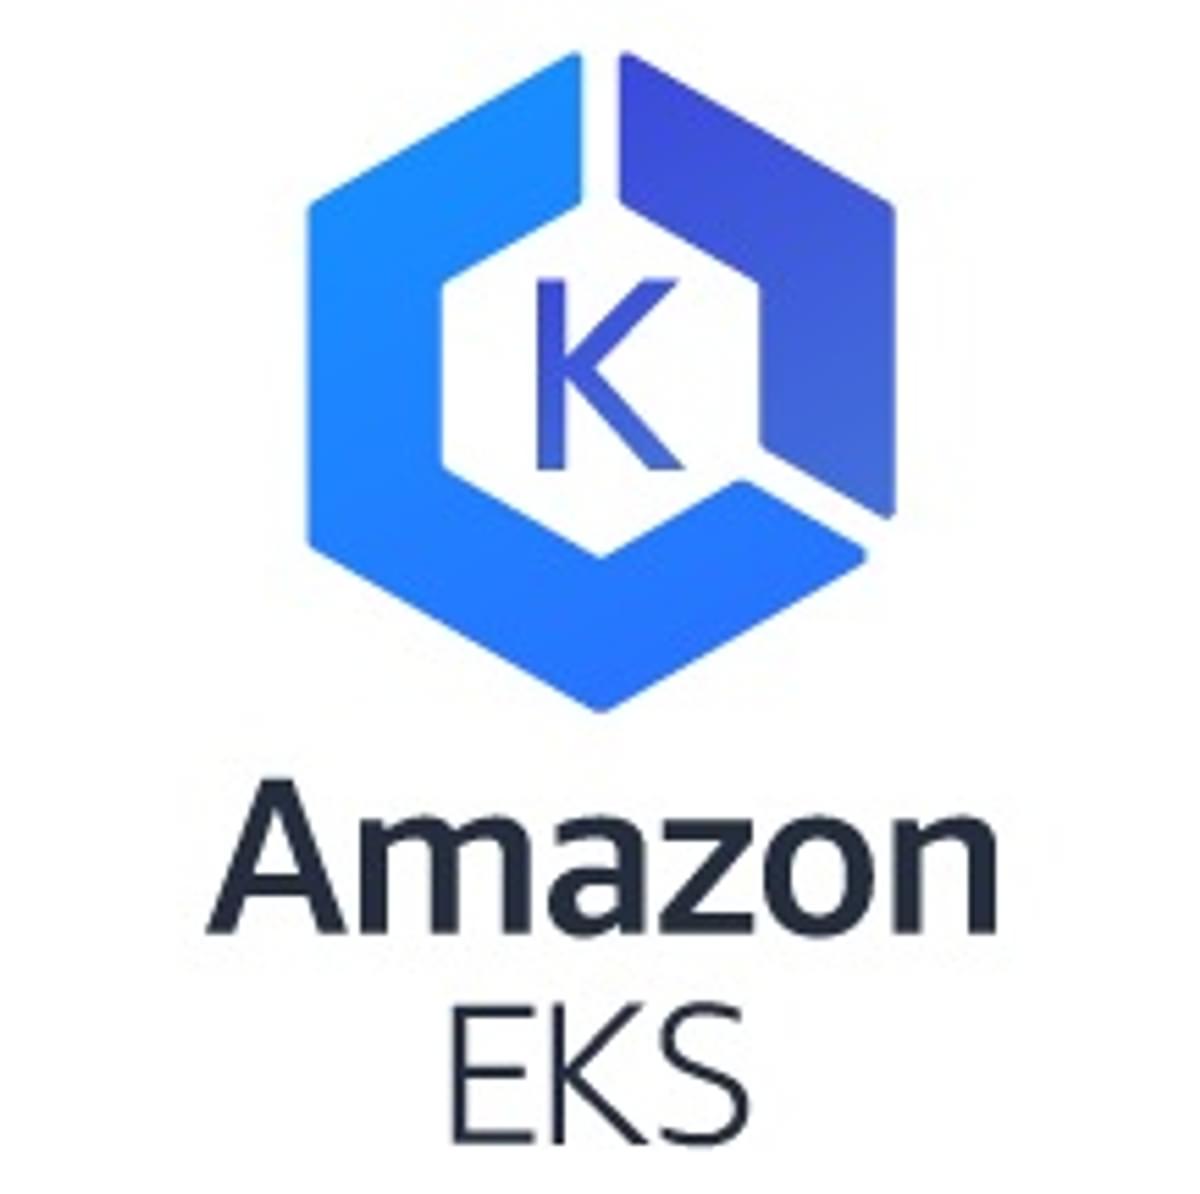 Amazon EKS levert Kubernetes als managed service op AWS image